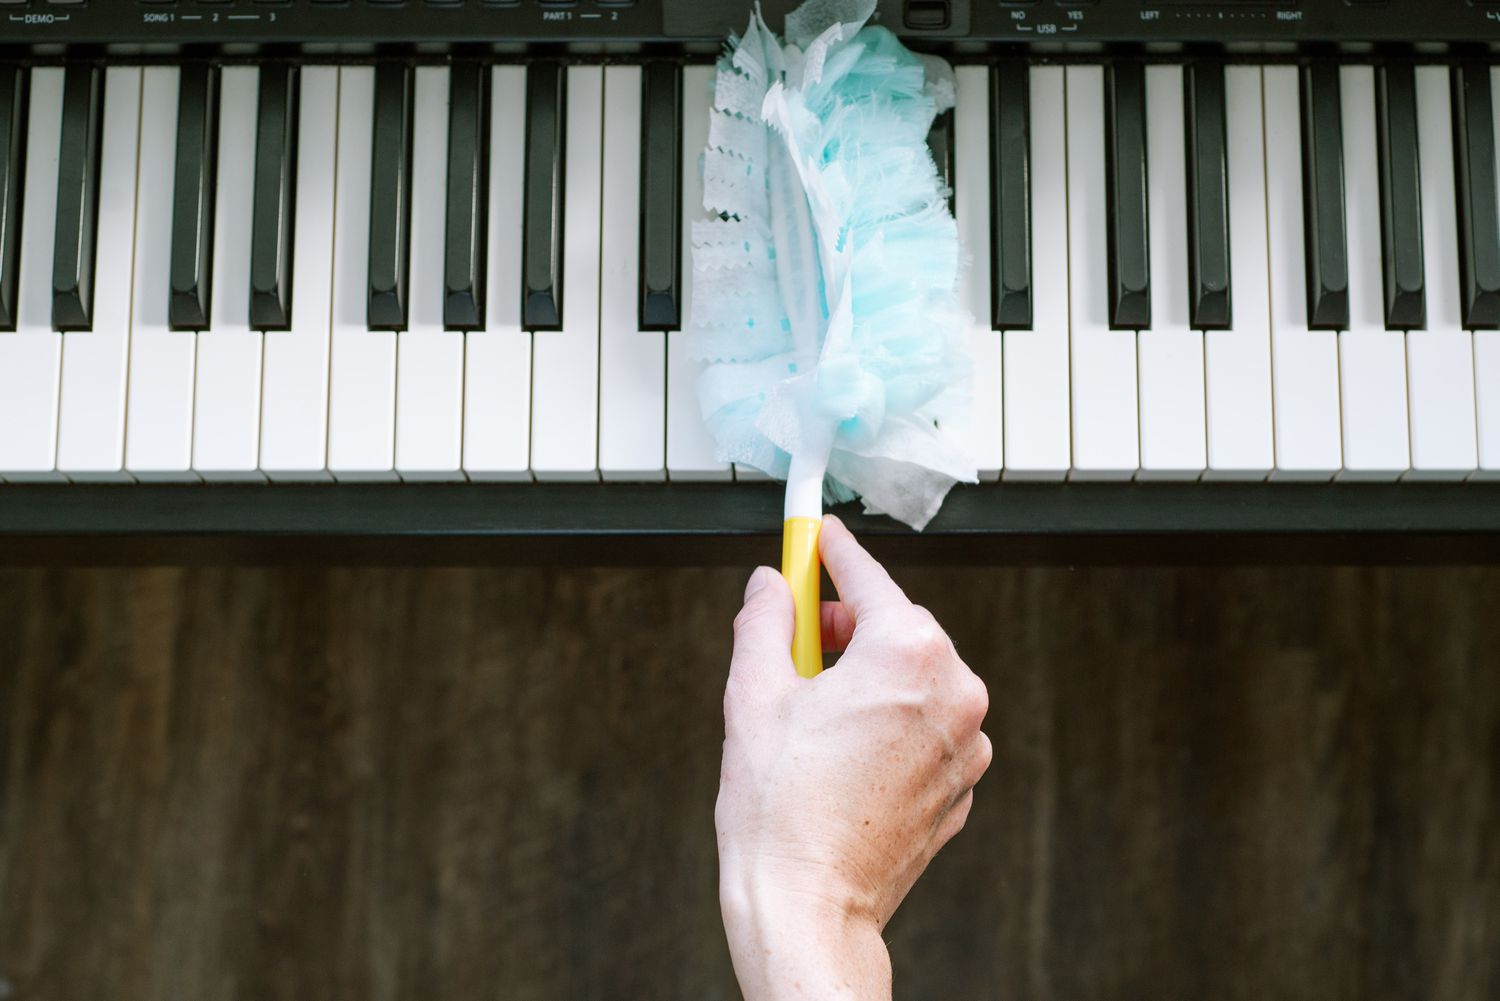 Persona quitando el polvo de las teclas de plástico de un piano